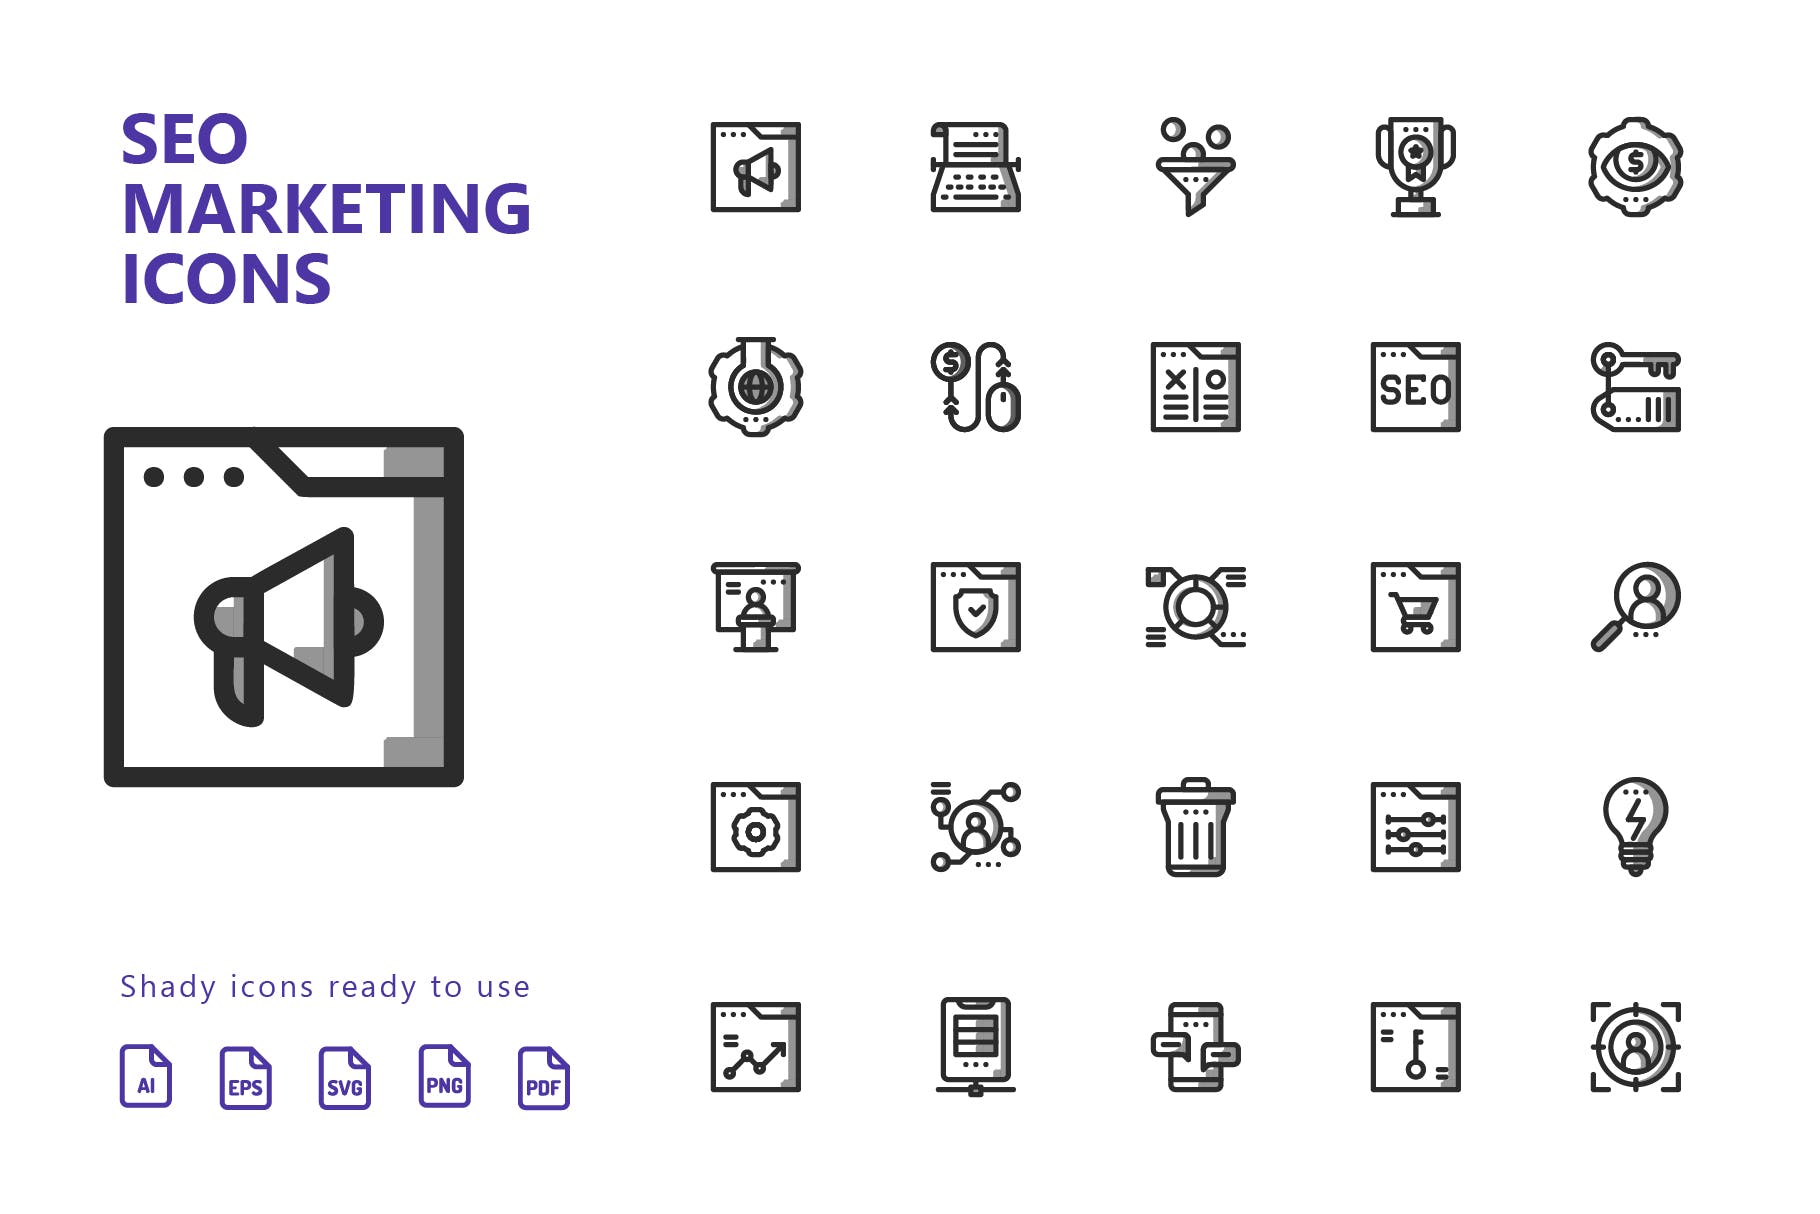 25枚SEO搜索引擎优化营销矢量阴影素材库精选图标v2 SEO Marketing Shady Icons插图(1)